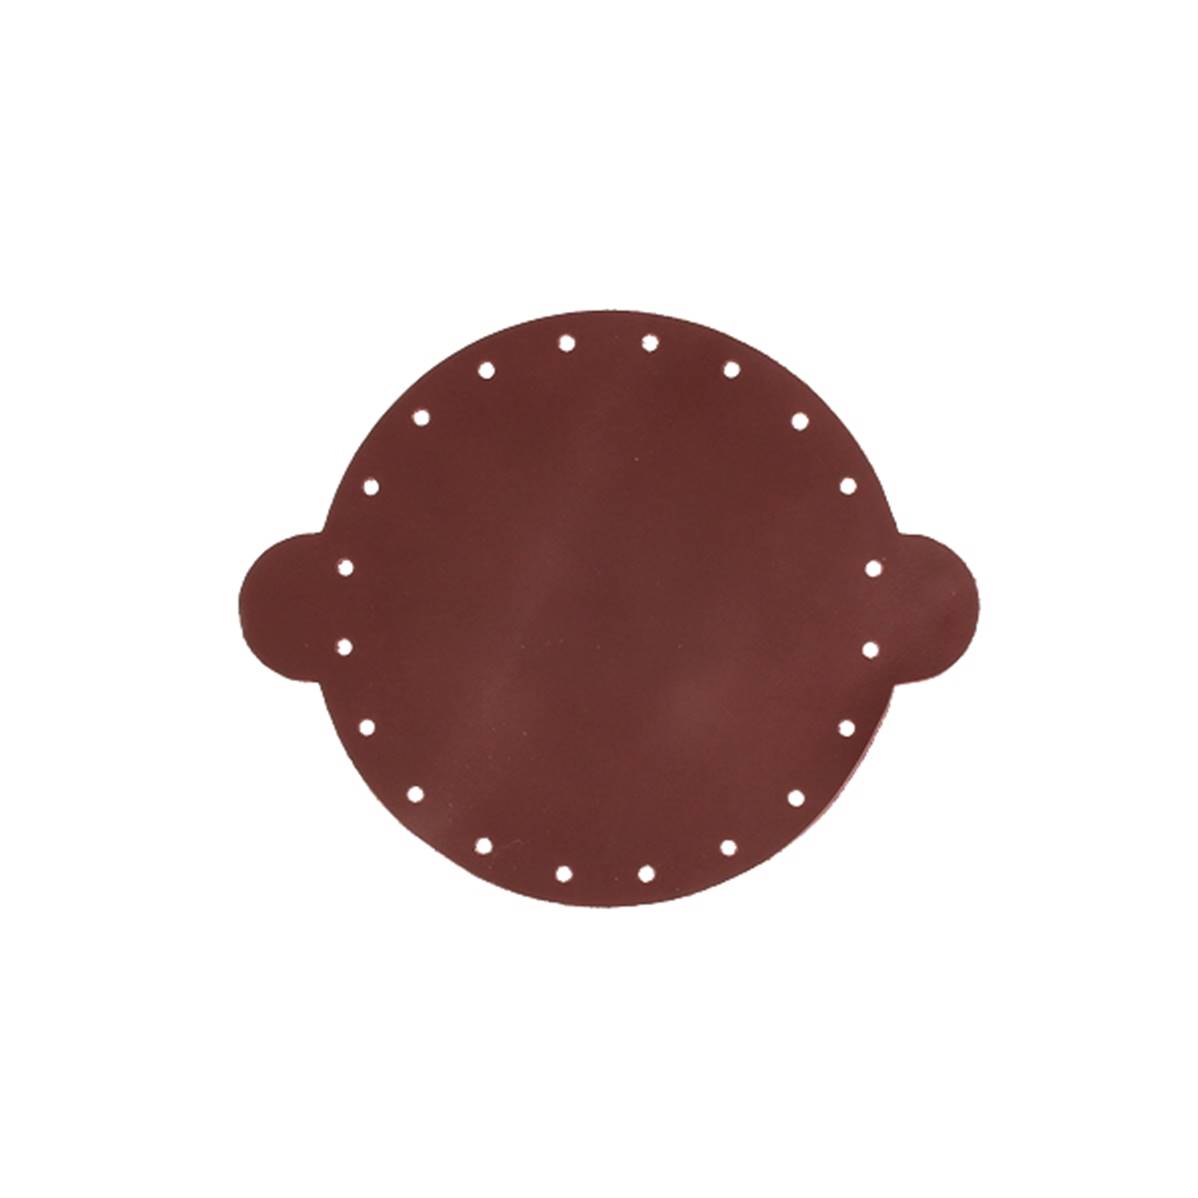 Cuir déja coupé pour faire une bourse en cuir BORDEAUX - Diamètre 14,5 cm